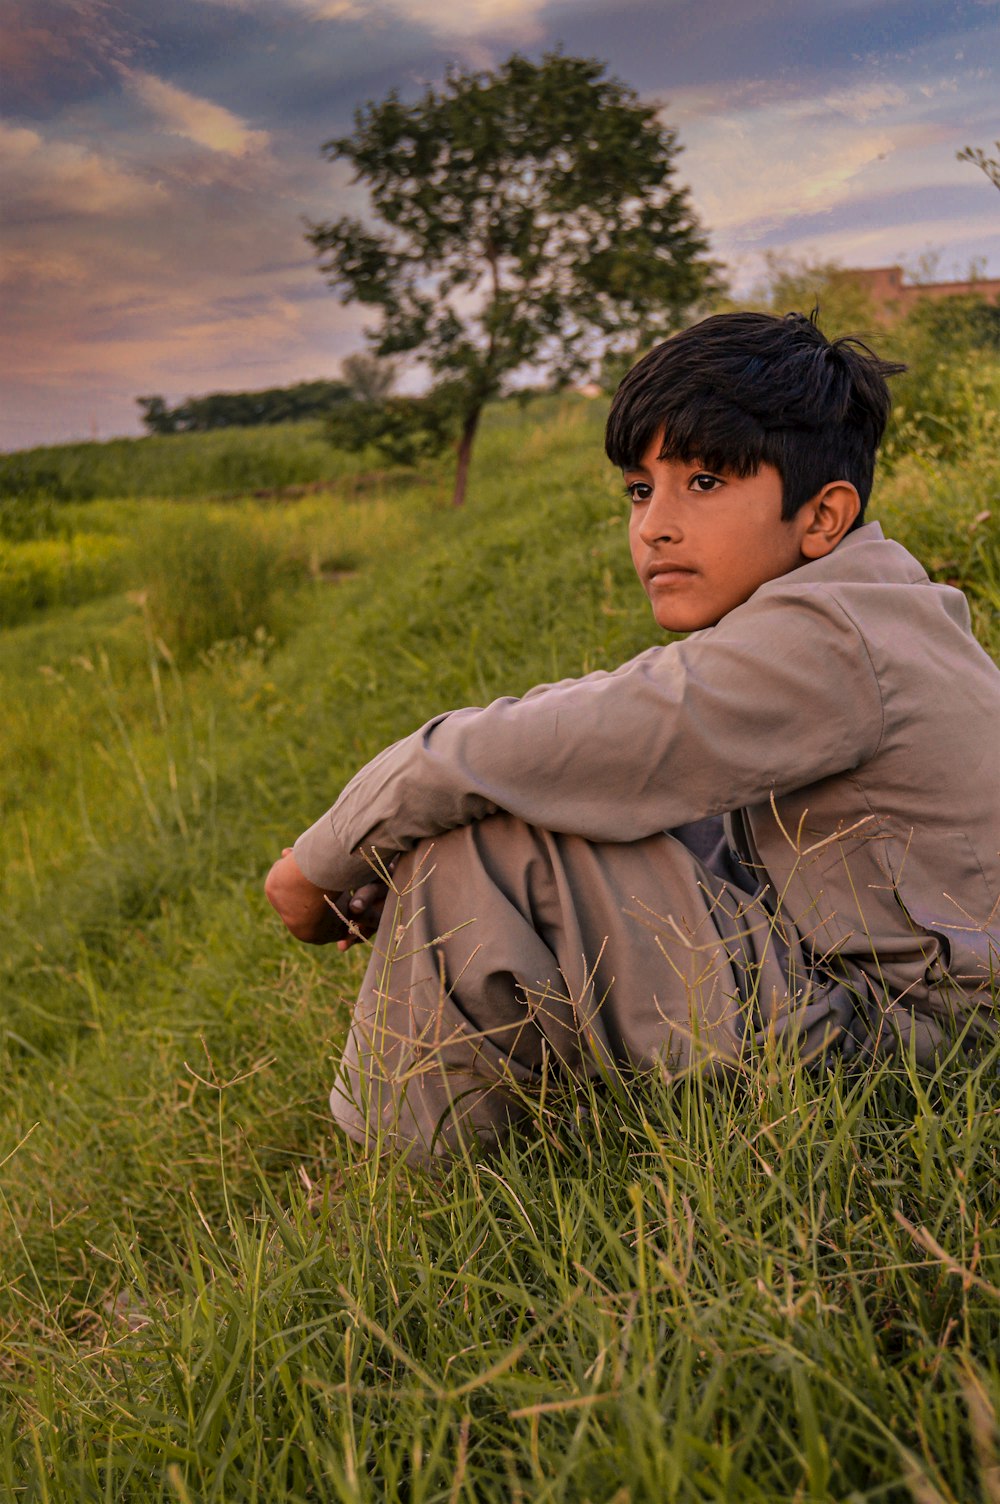 a boy sitting in a grassy field